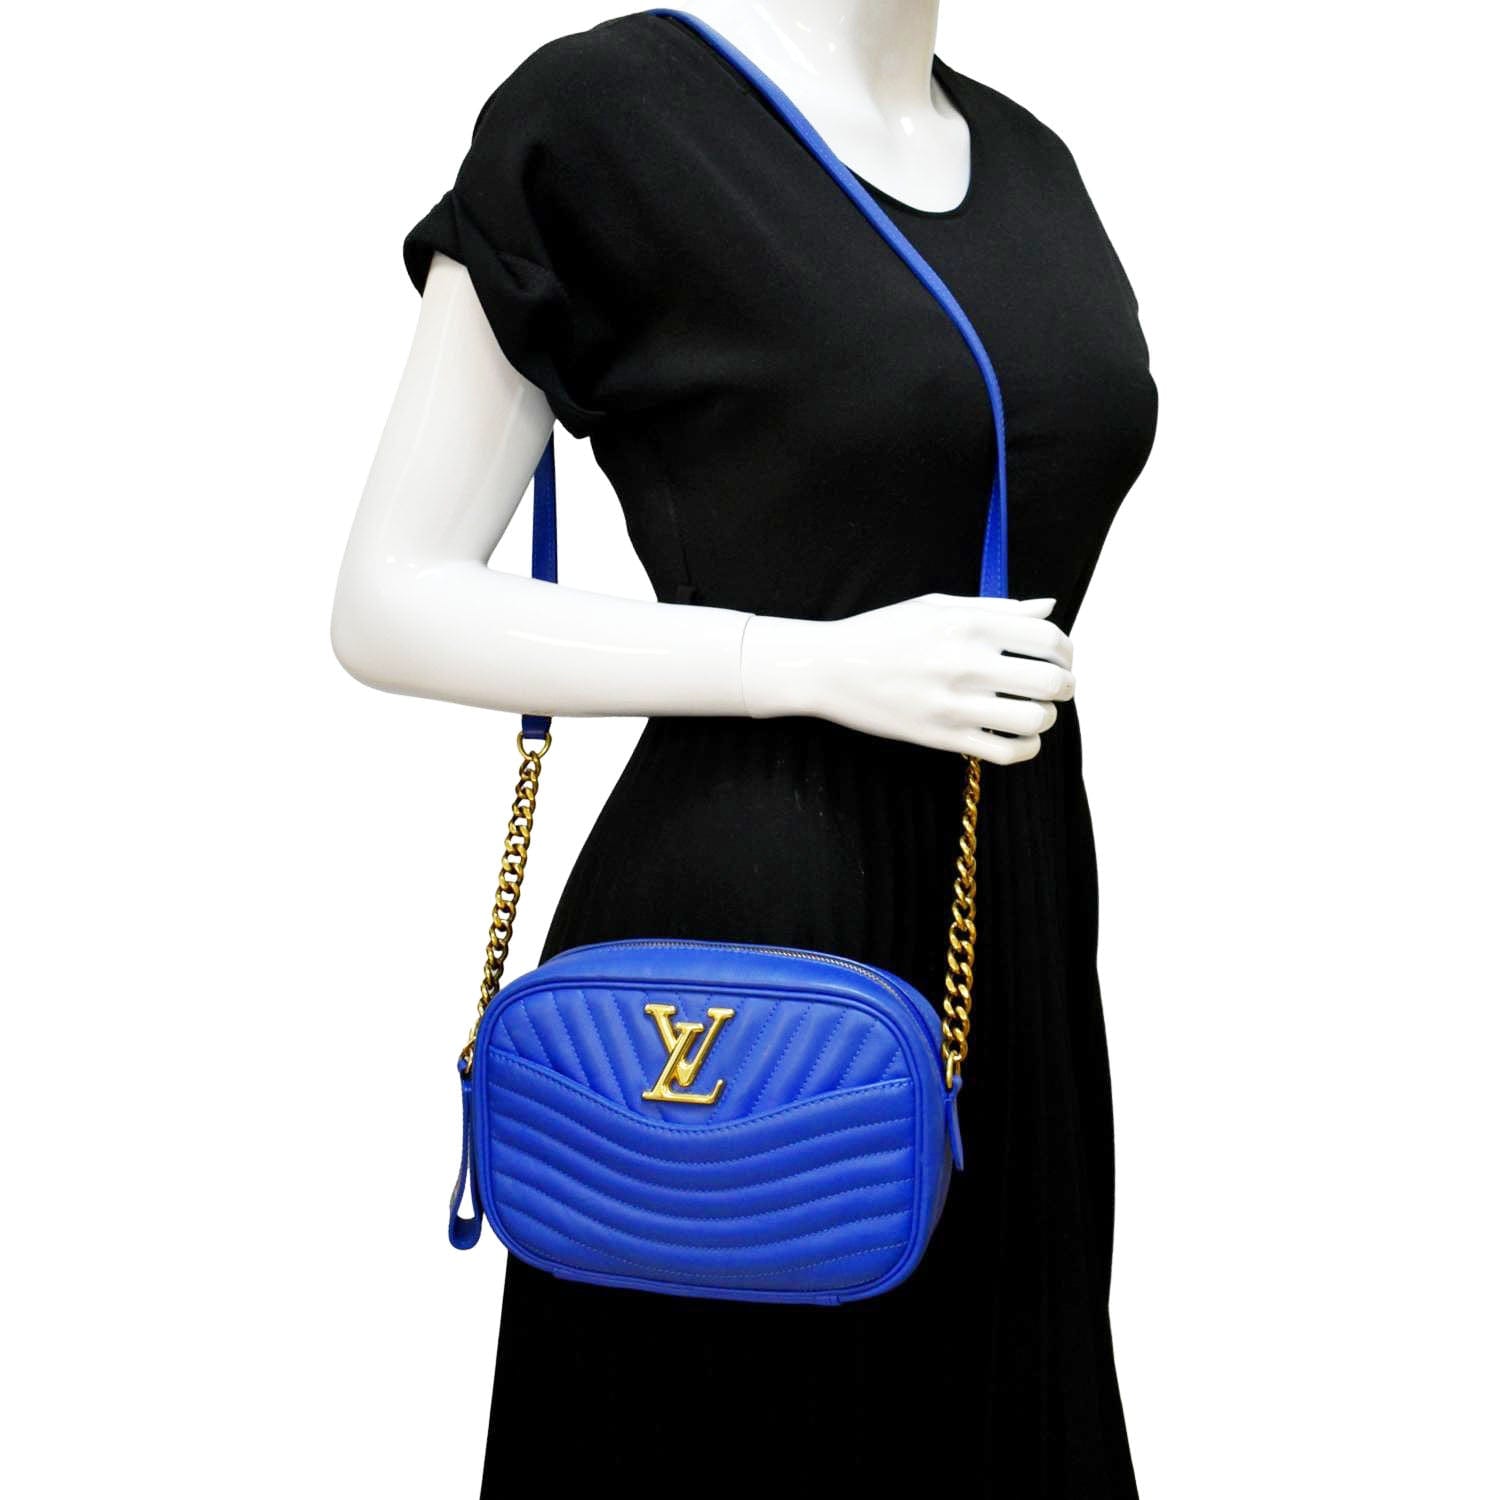 Louis Vuitton Calfskin New Wave Camera Bag - FINAL SALE, Louis Vuitton  Handbags